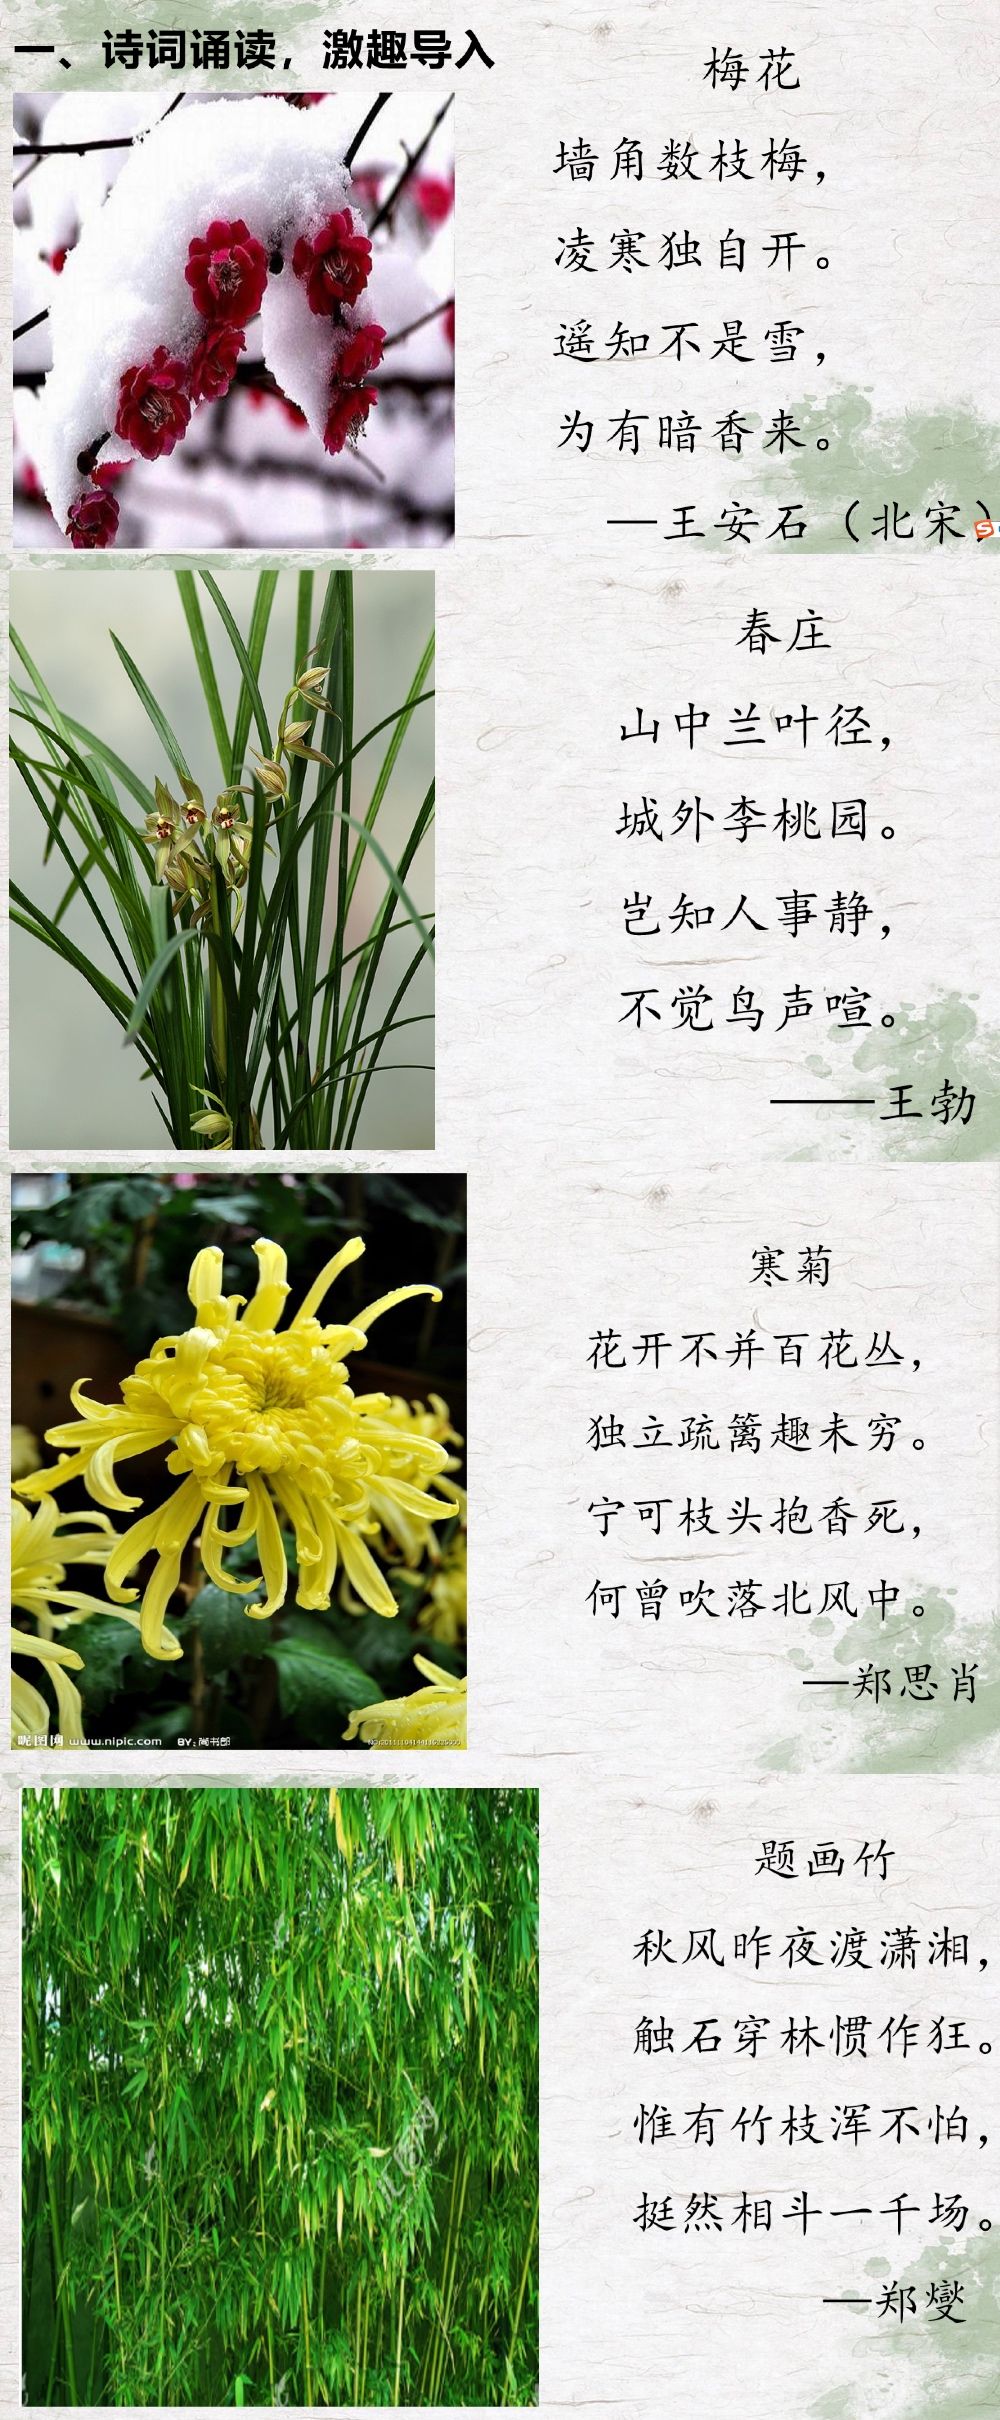 古诗中菊的象征及诗句__菊的诗句和象征意义